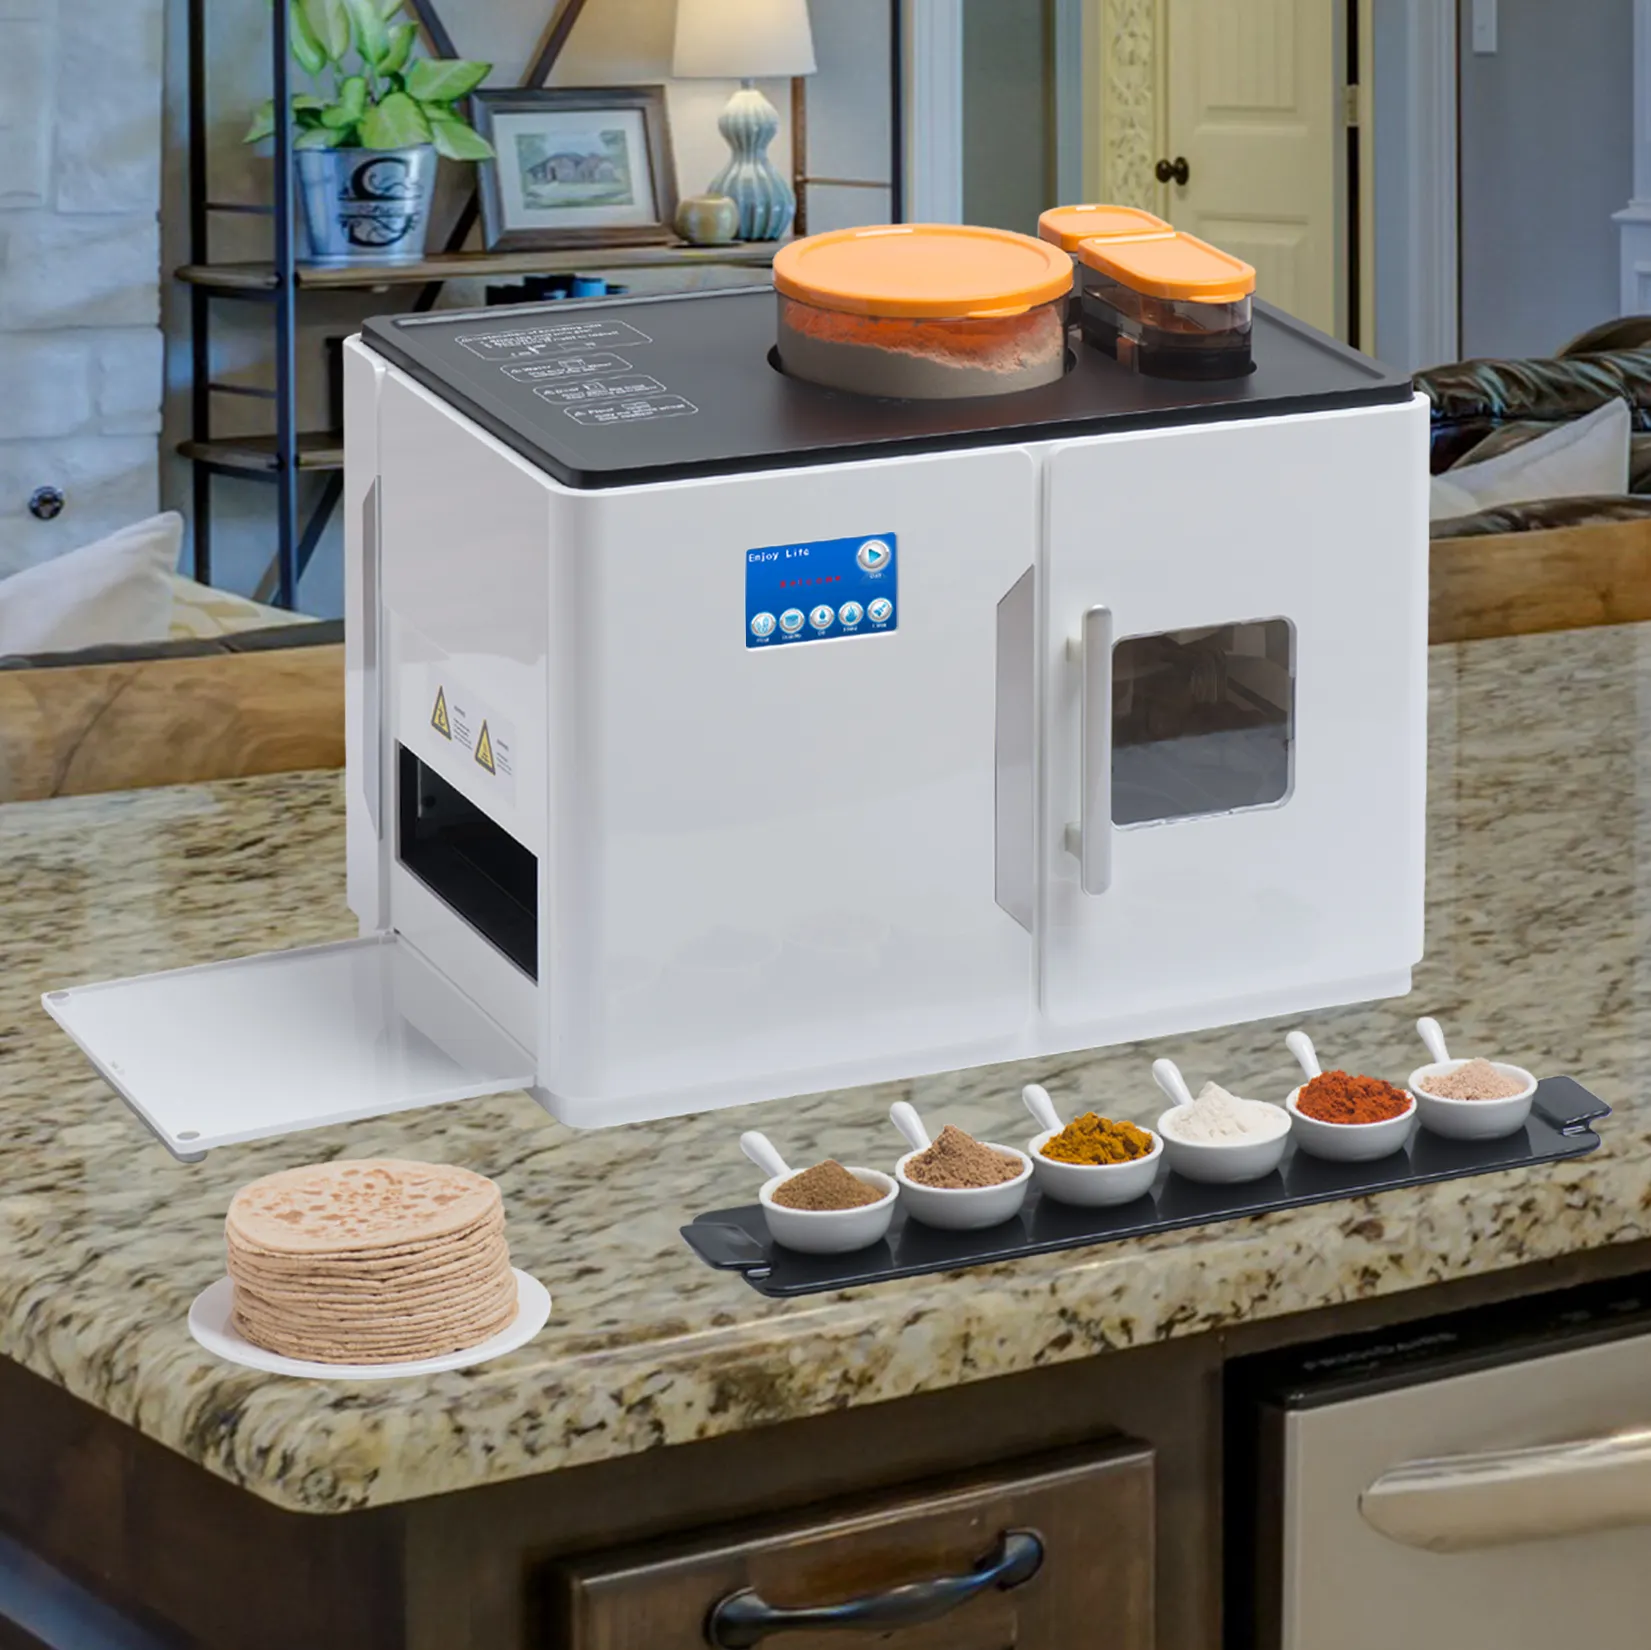 Usine Roti Making Machine pour usage domestique Cuisinière automatique Roti Maker